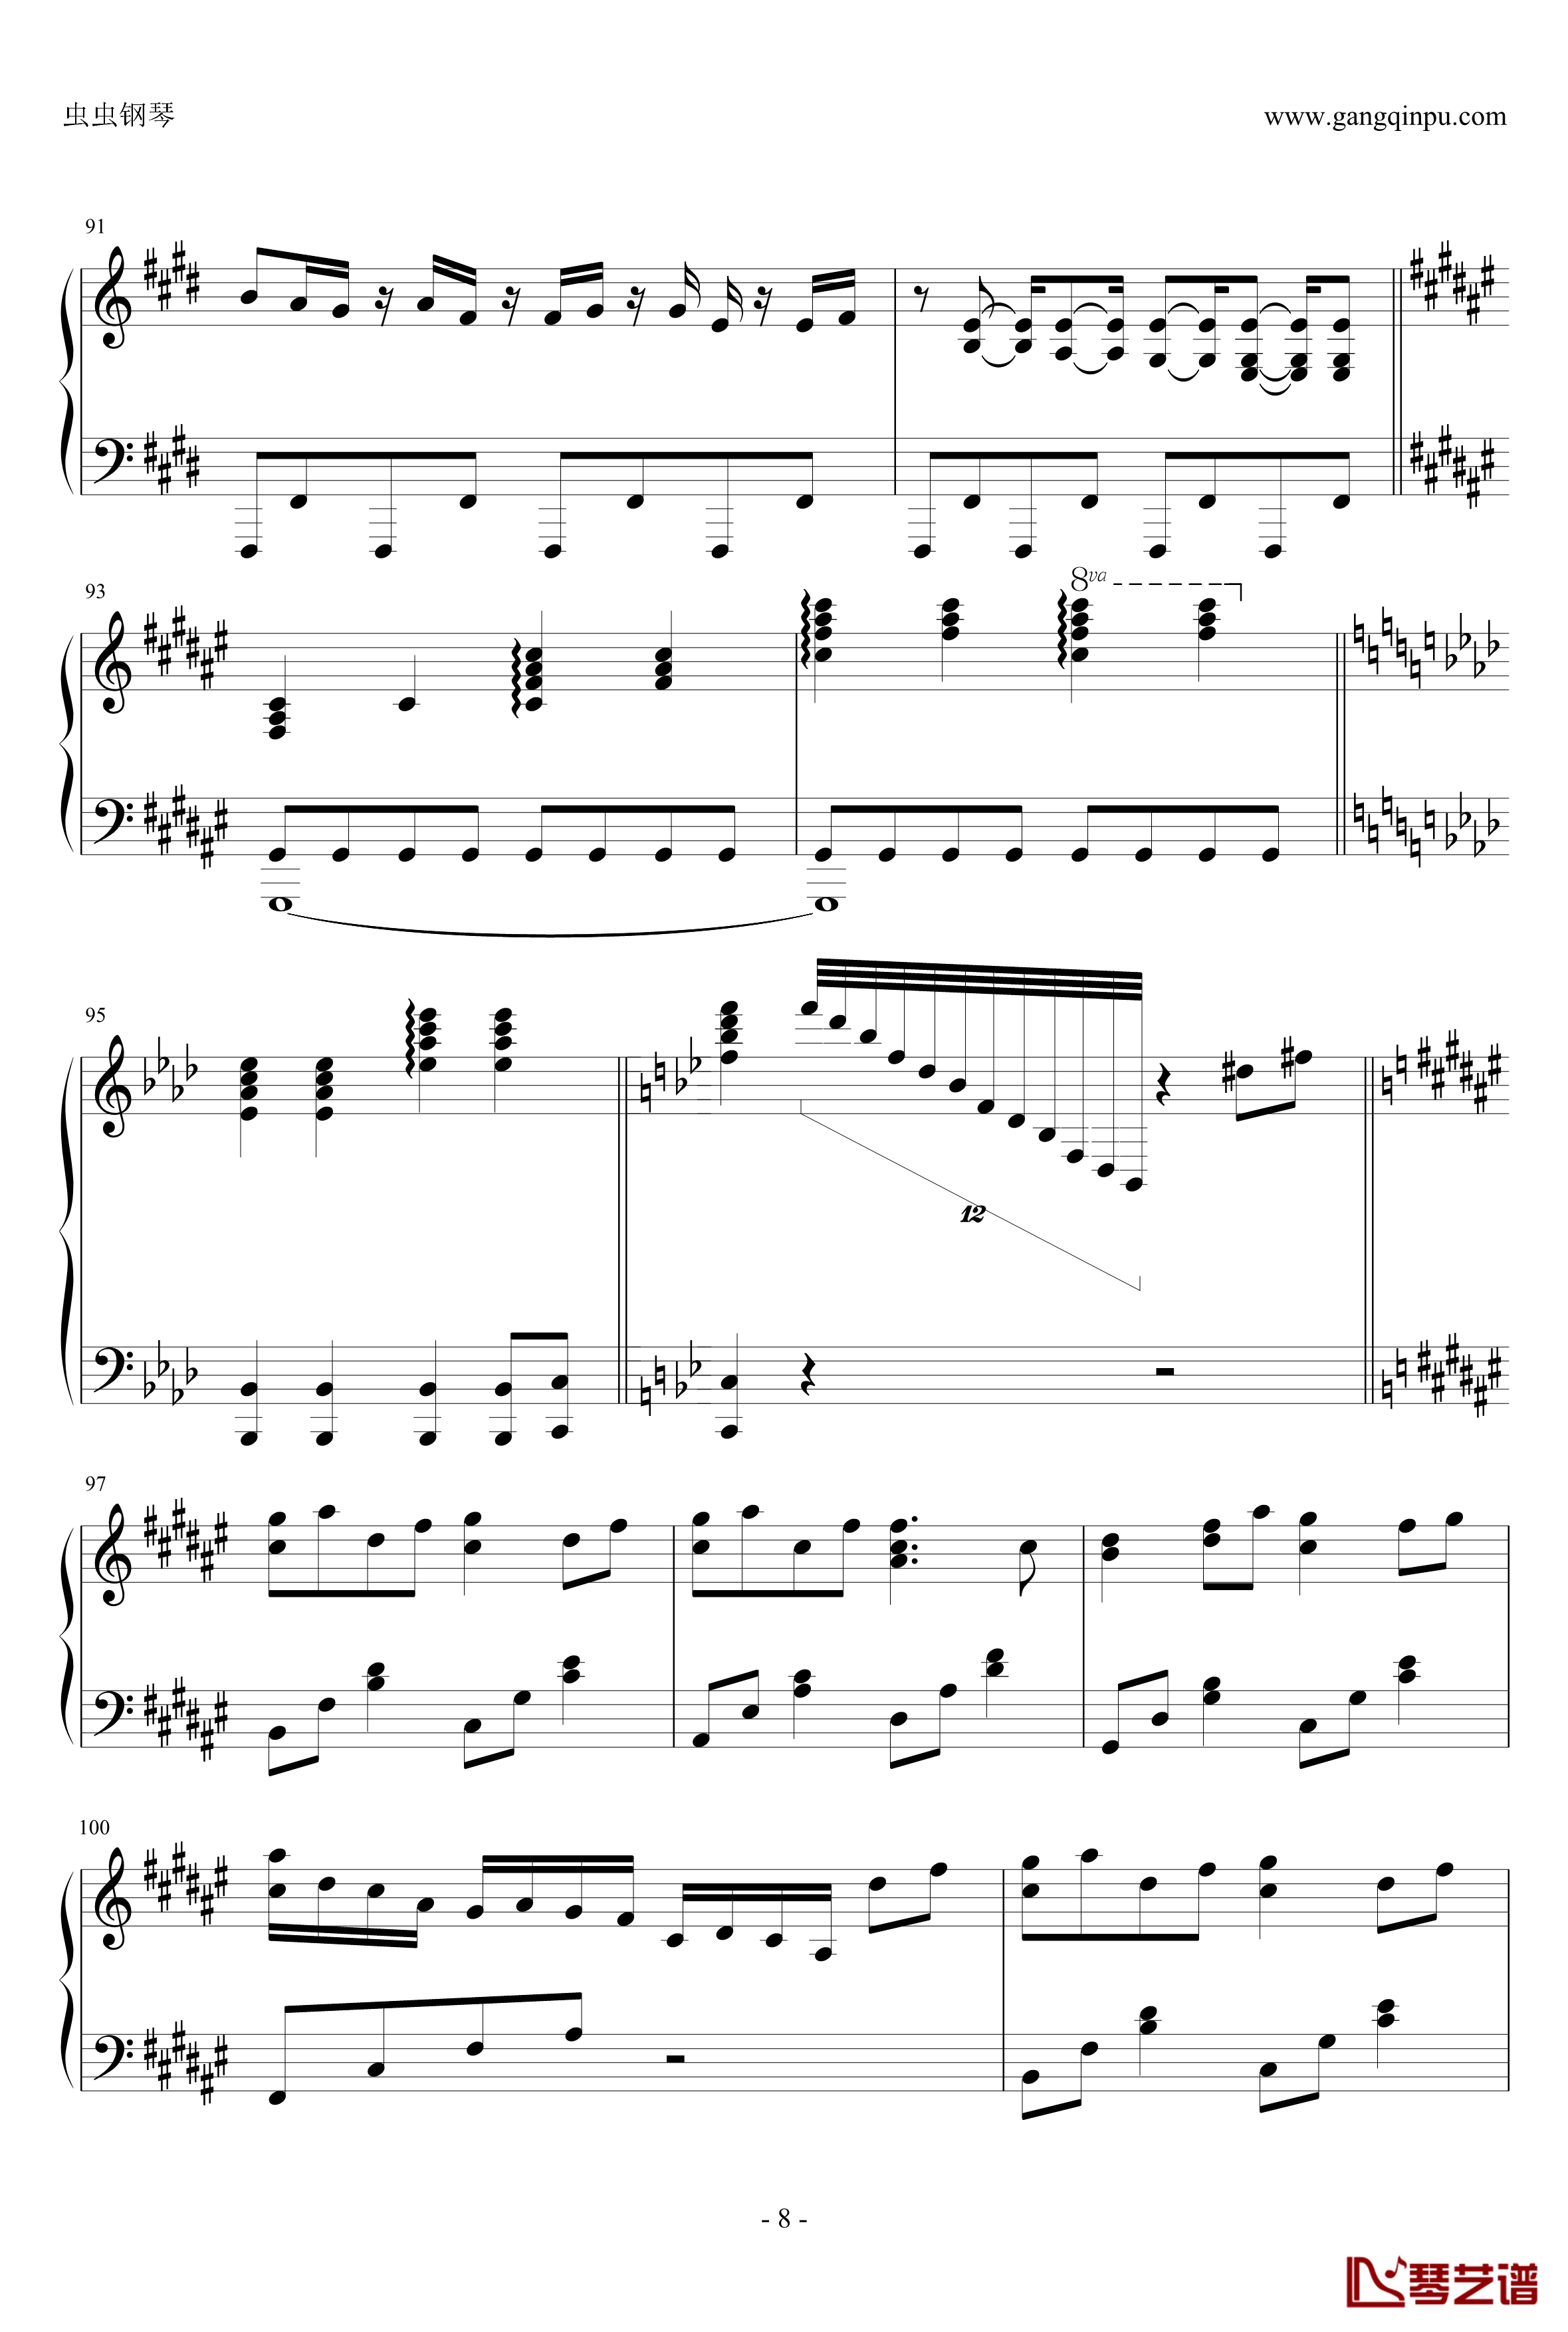 白金迪斯科钢琴谱-伪物语8